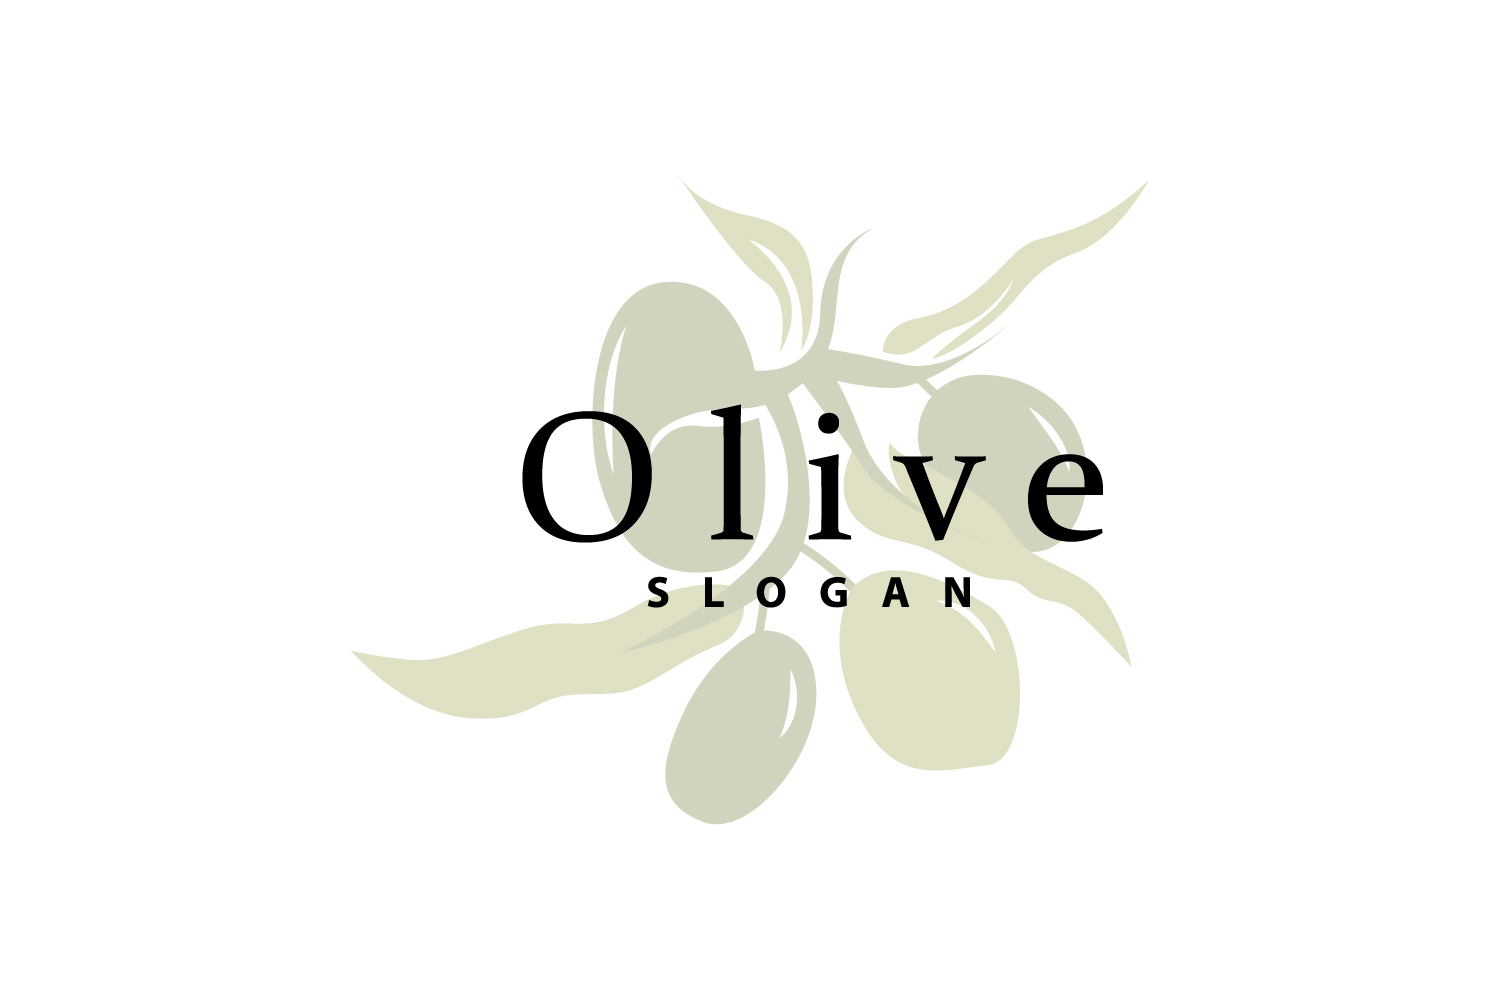 Olive Oil Logo Olive Leaf PlantV12